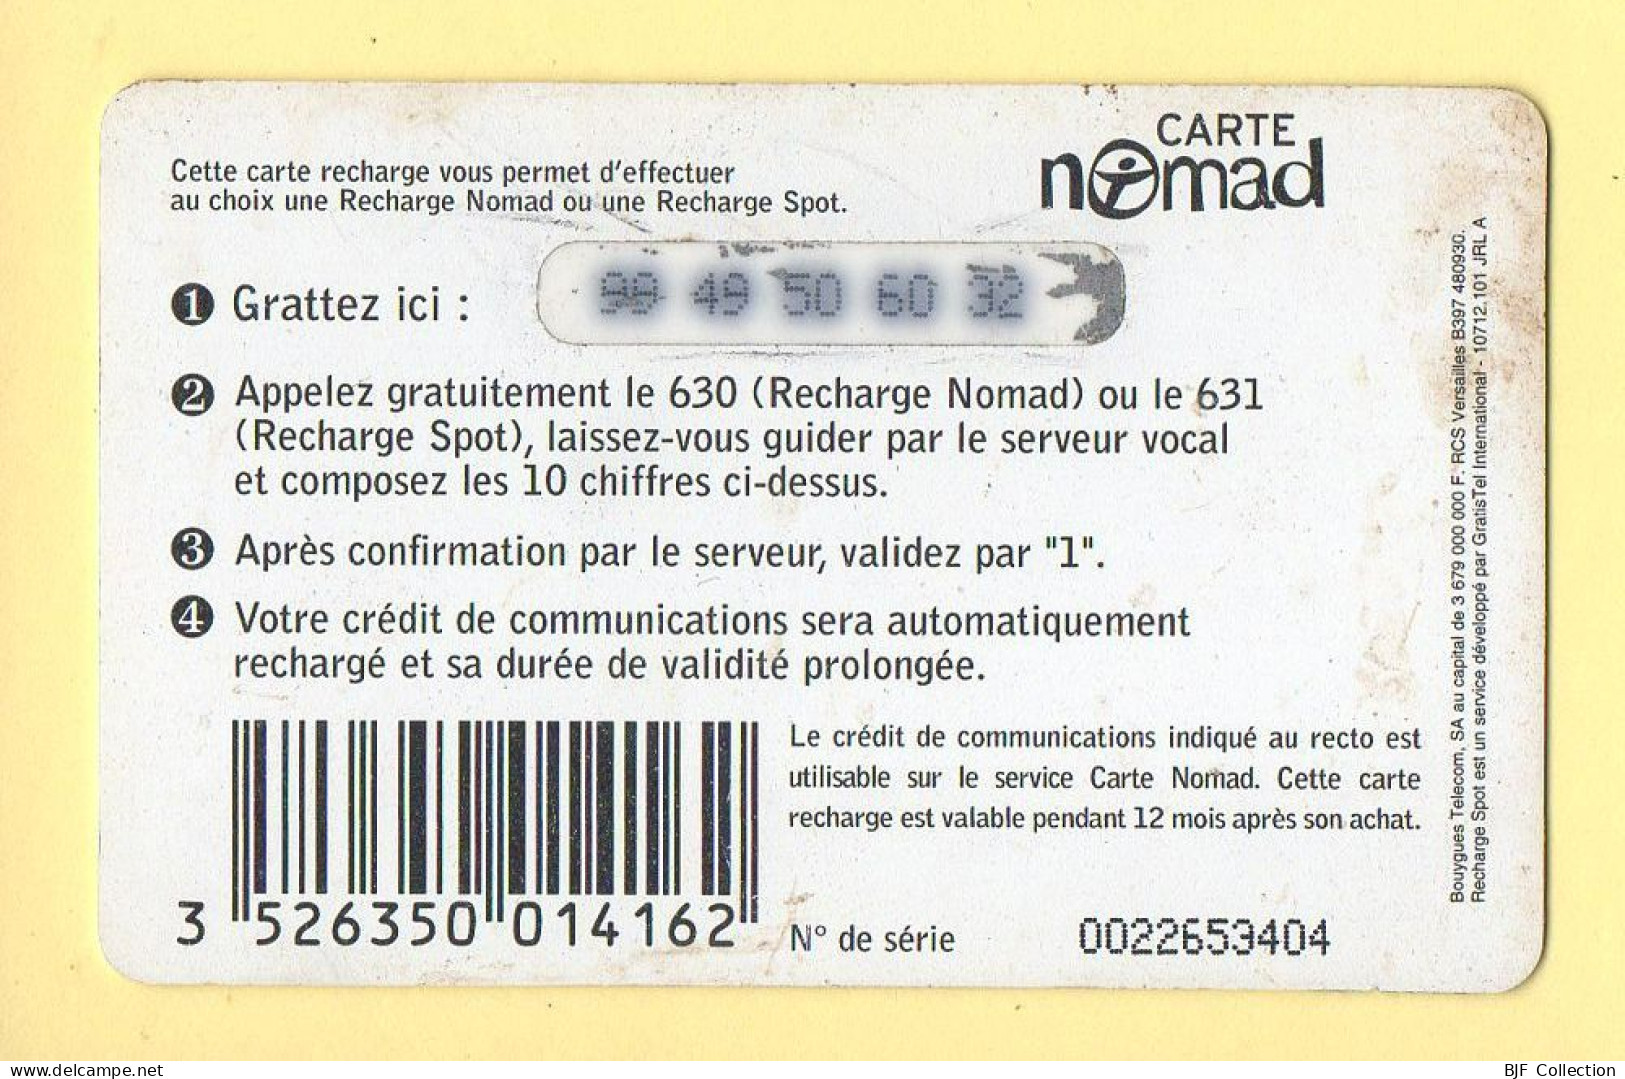 Carte Prépayée : NOMAD Ou SPOT SMALL / 95 Francs / Bouygues Telecom - Altri & Non Classificati